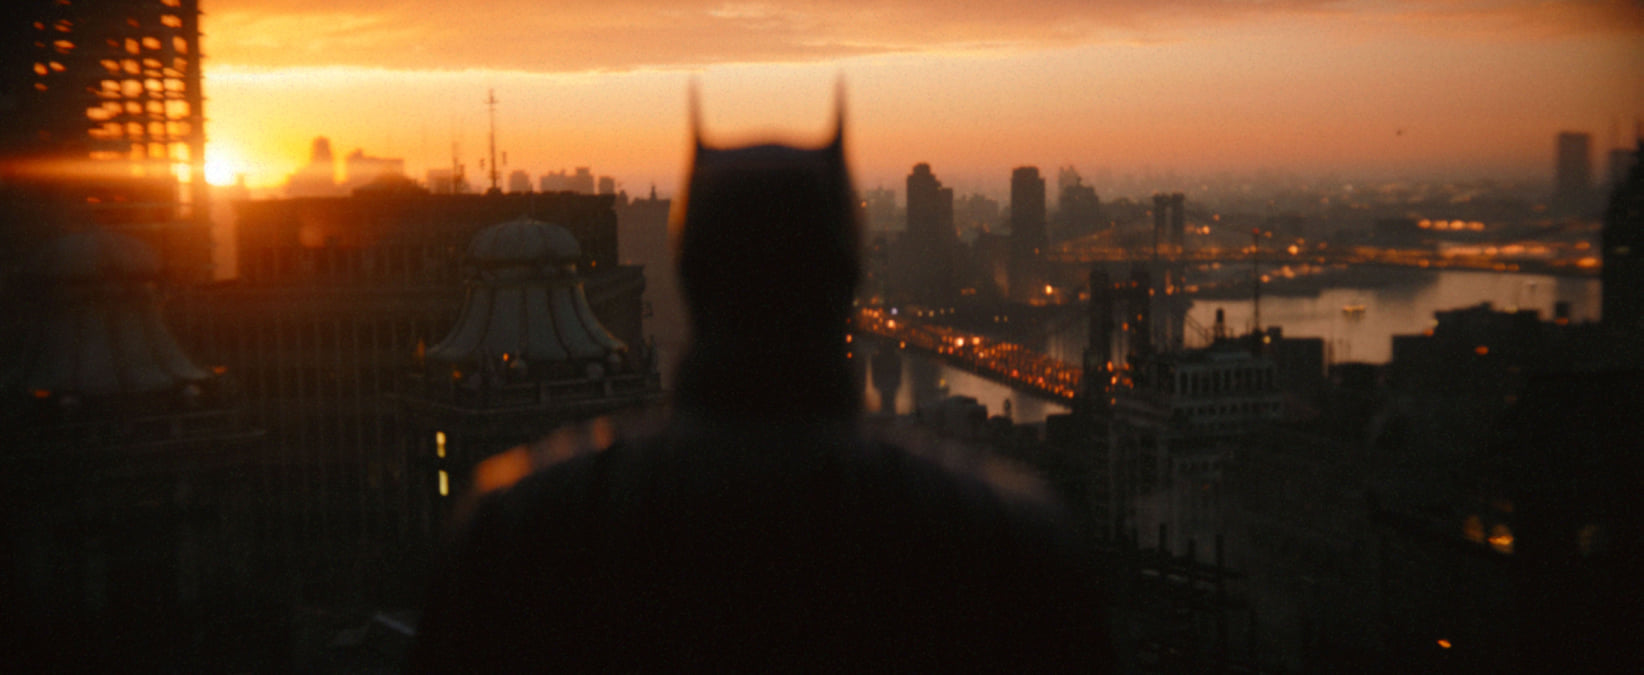 VIDEO. S-a lansat primul trailer oficial al filmului Batman, cu Robert Pattinson